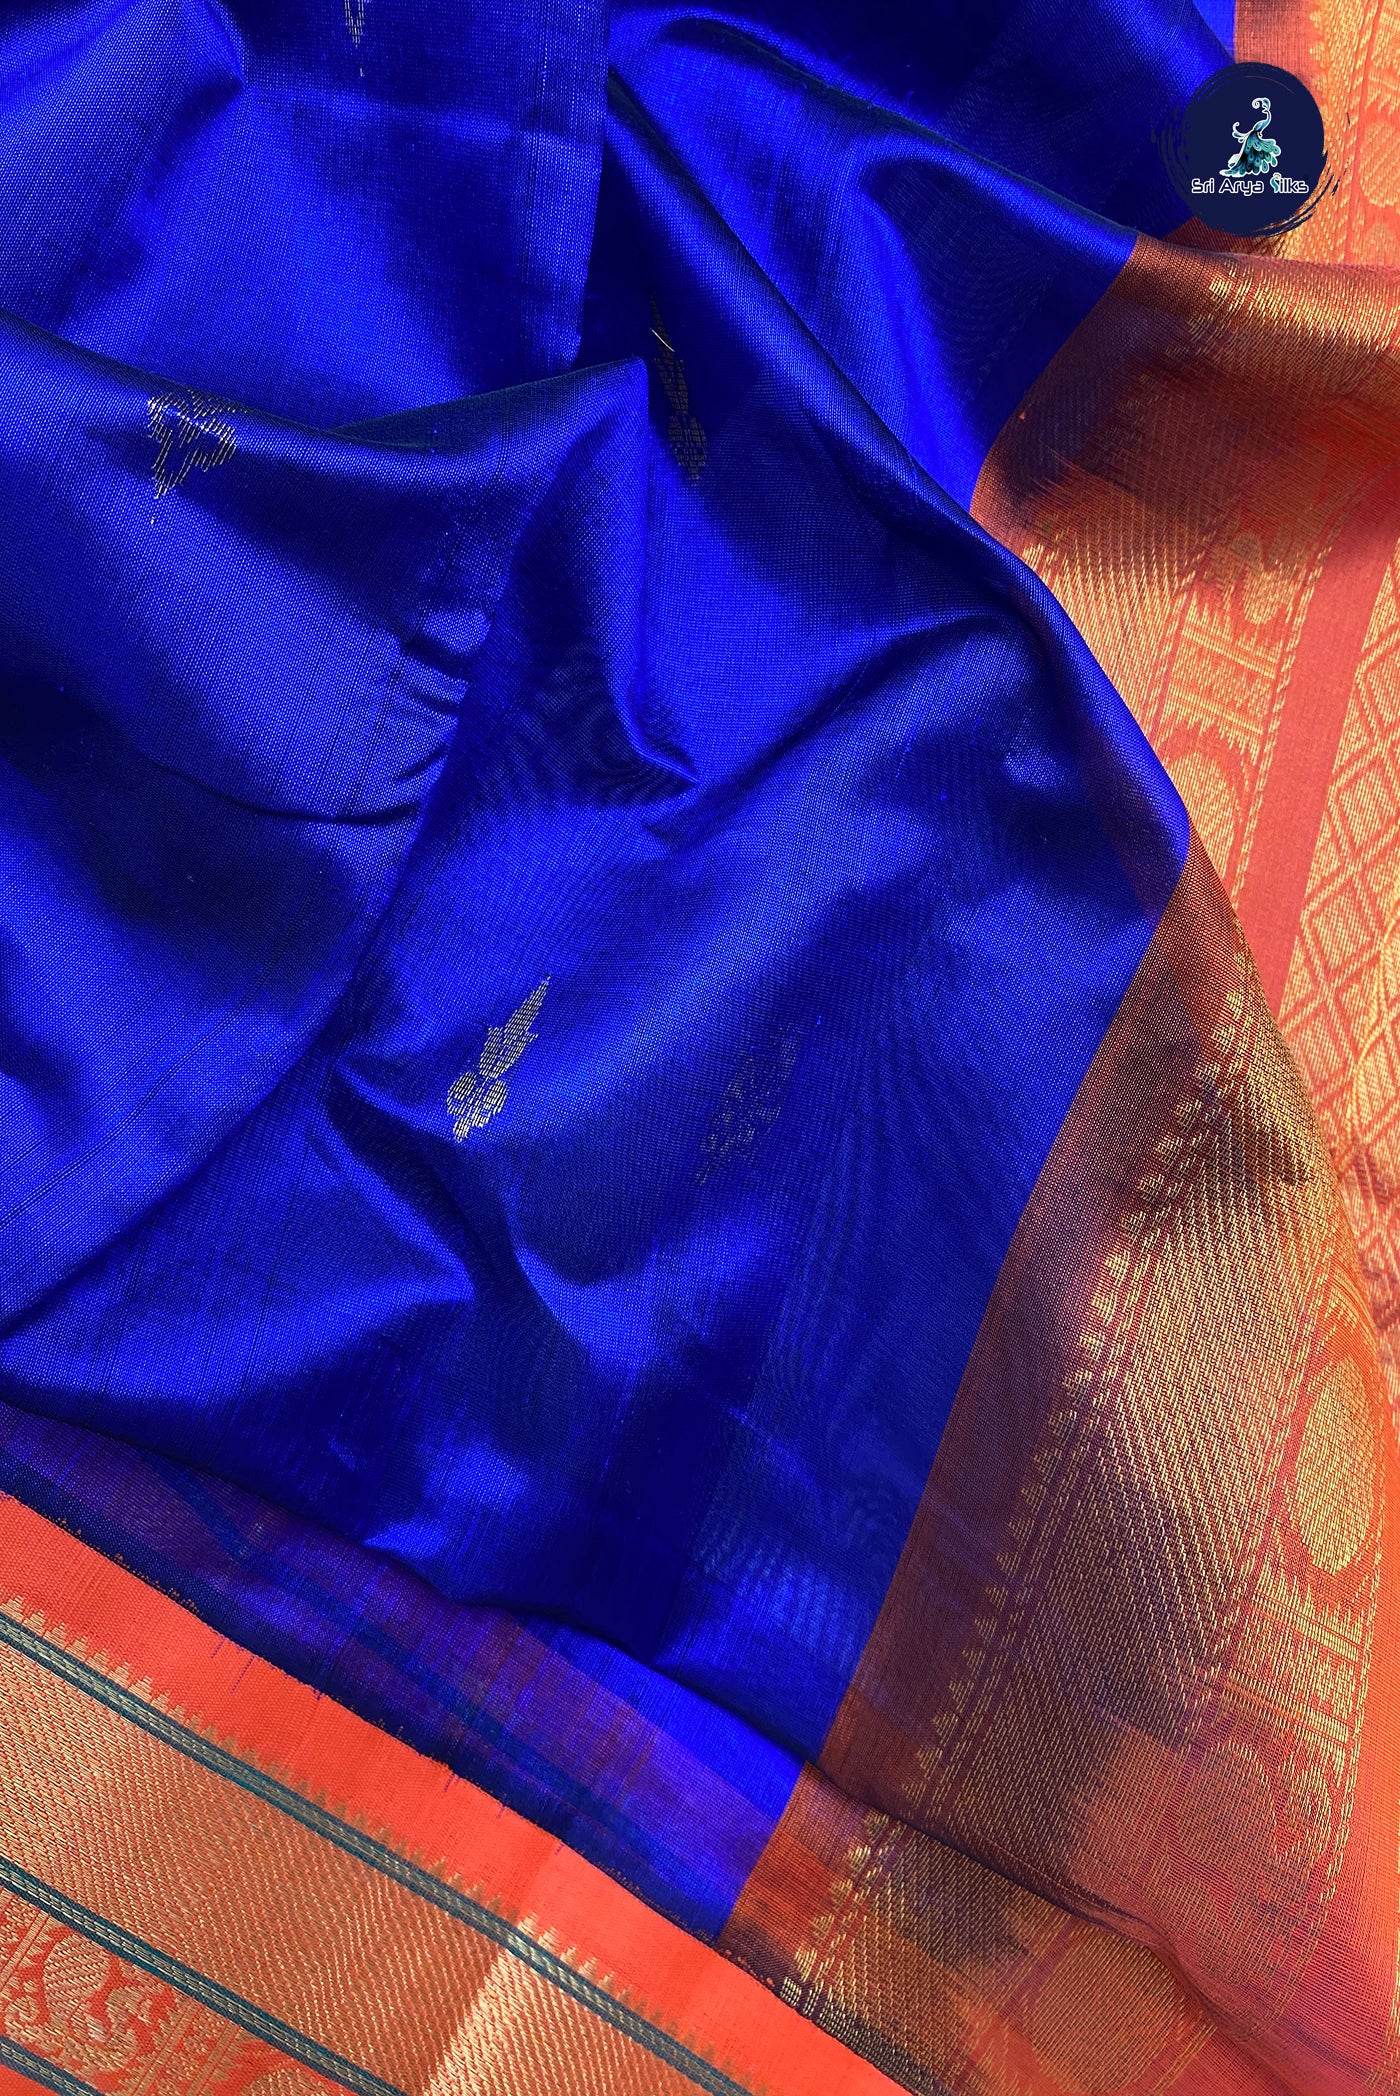 Navy Blue Silk Cotton Saree With Zari Buttas Pattern